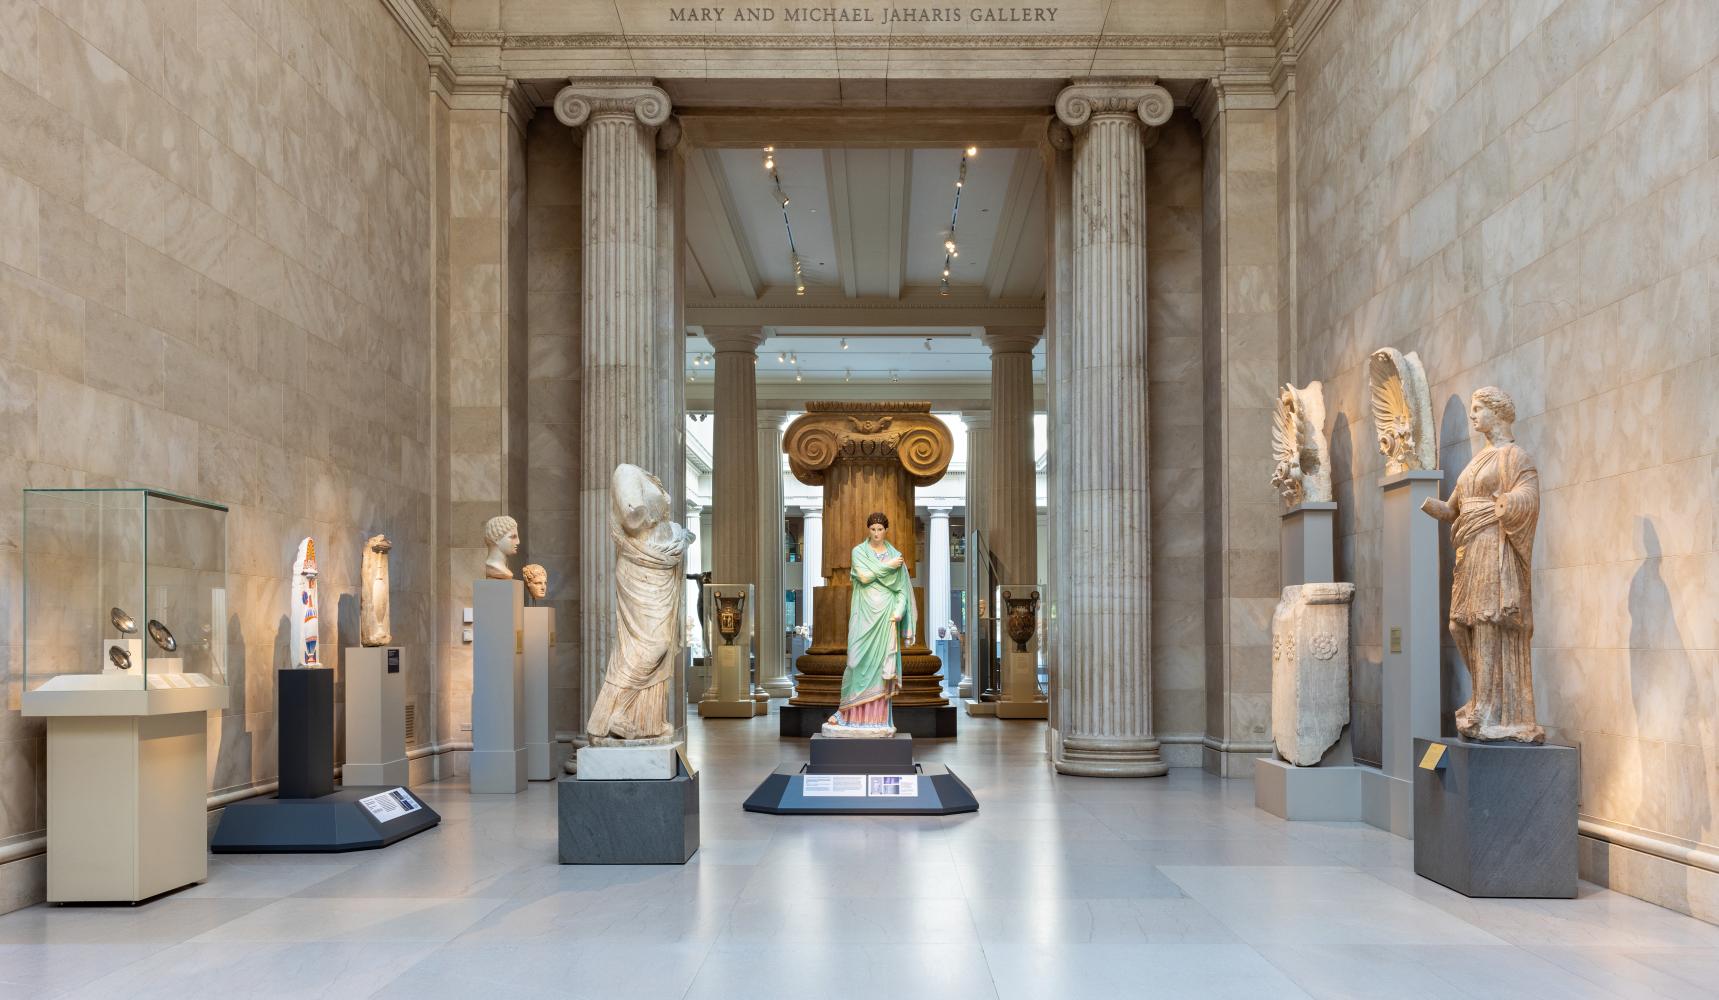 Rekonstruktionen antiker Skulpturen in der Ausstellung "Chroma" im Metropolitan Museum of Art, New York